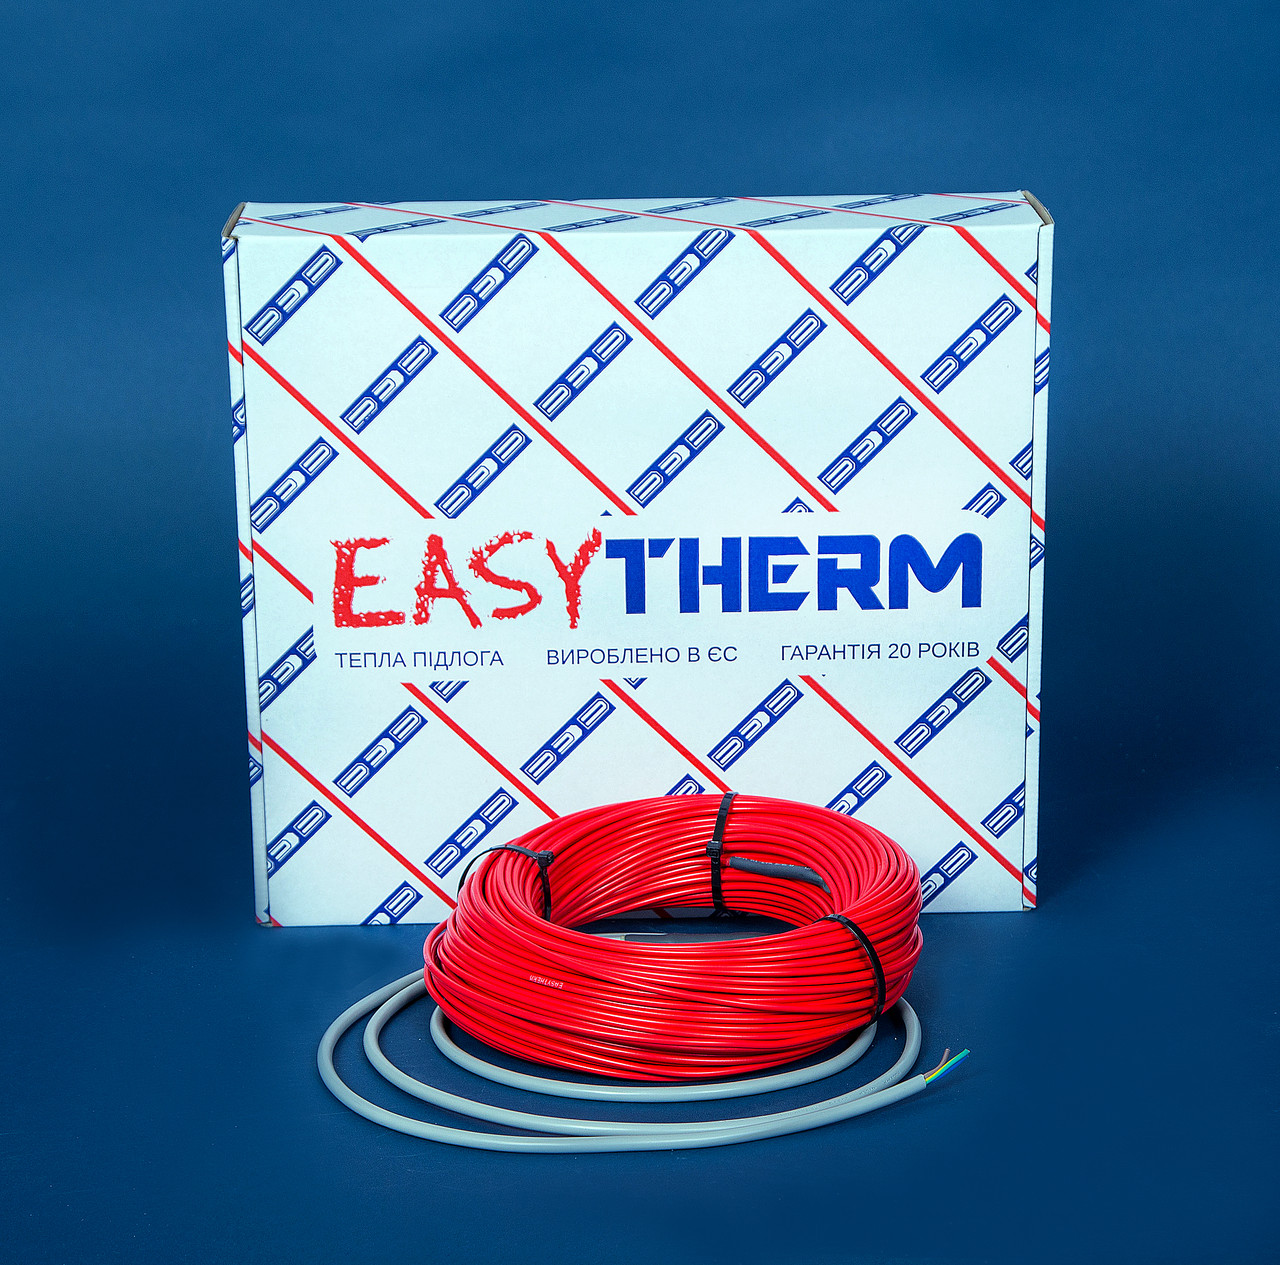 Электрический теплый пол EasyTherm Easycable 8.0 отзывы - изображения 5